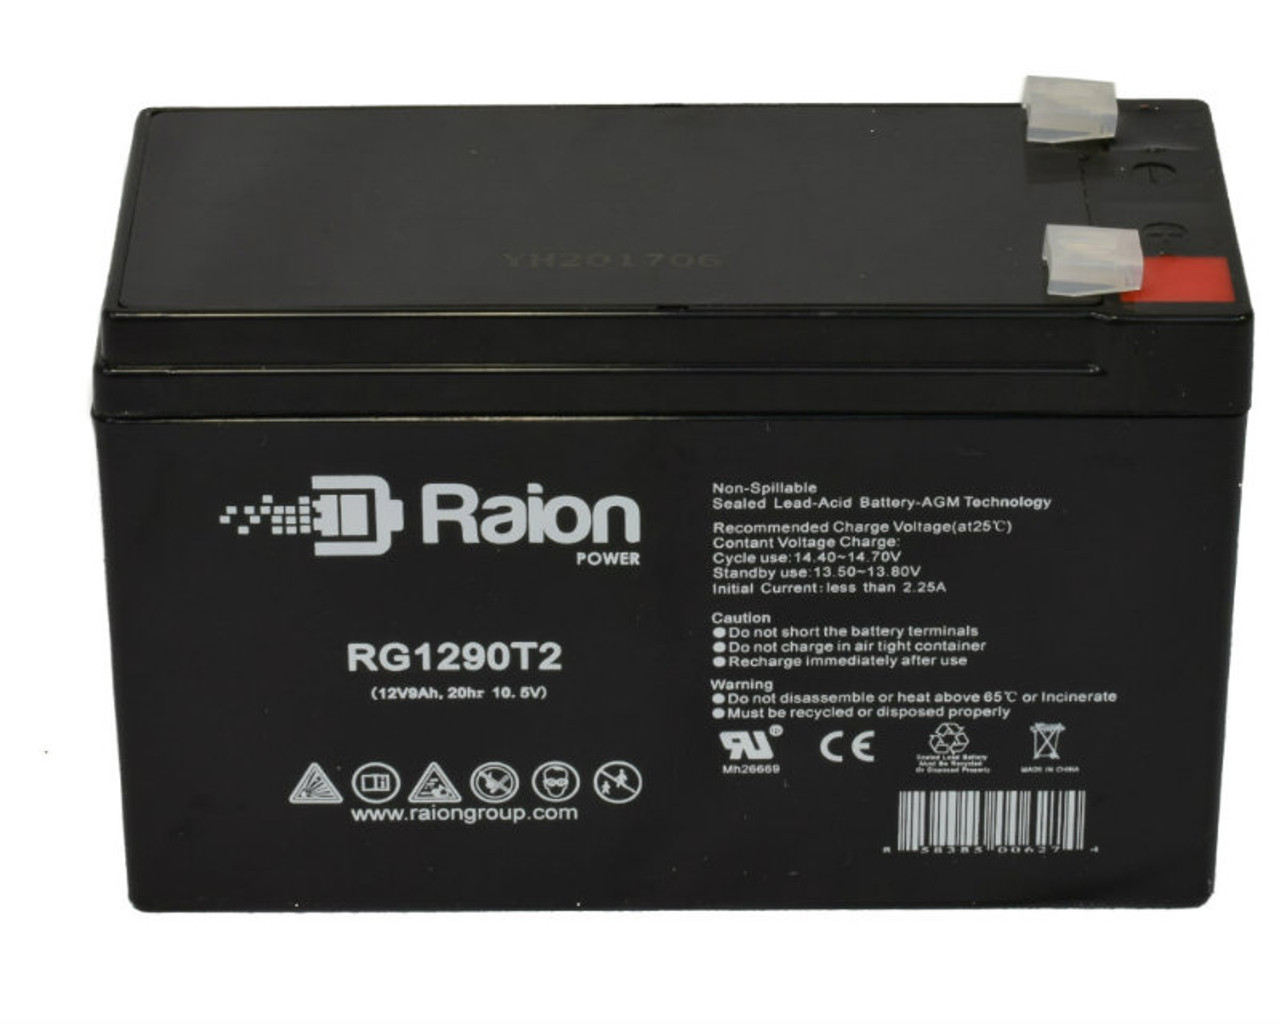 Raion Power RG1290T2 12V 9Ah Lead Acid Battery for BatteryMart SLA-12V9-F2